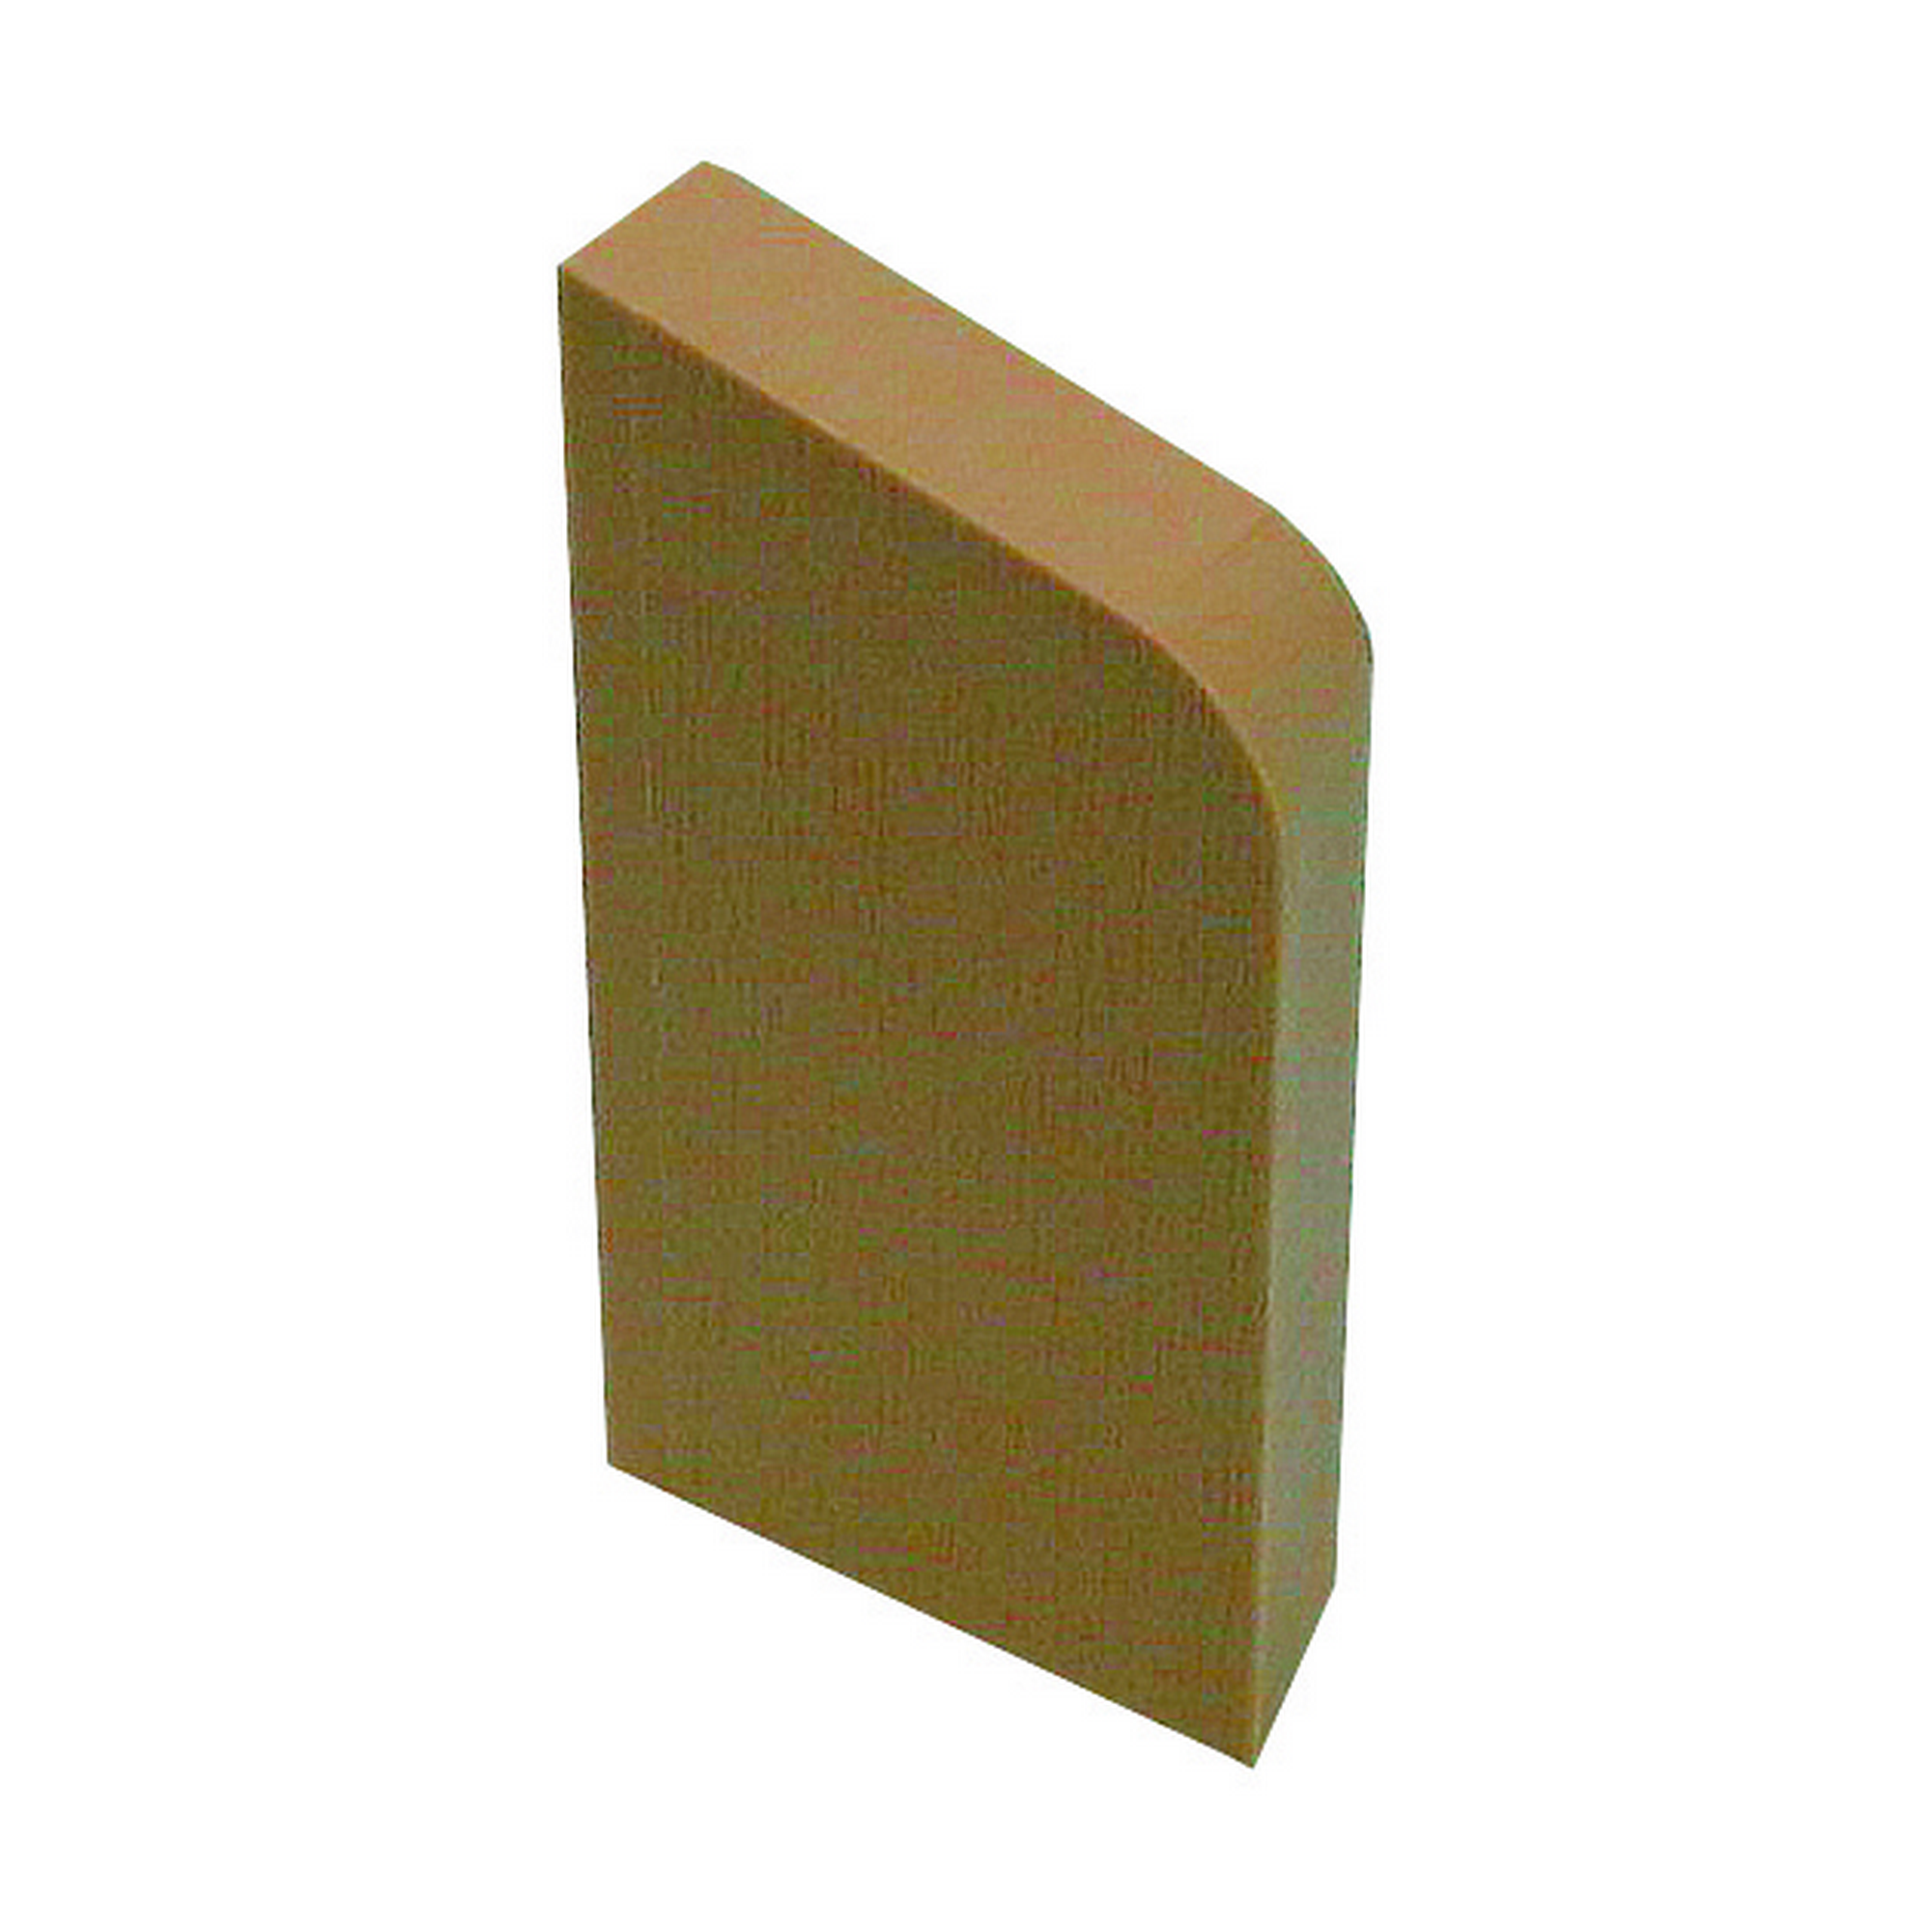 Sockelleistenendstück 'Wiroflex' Kunststoff weiß rechts 8,6 x 4,5 x 1 cm + product picture